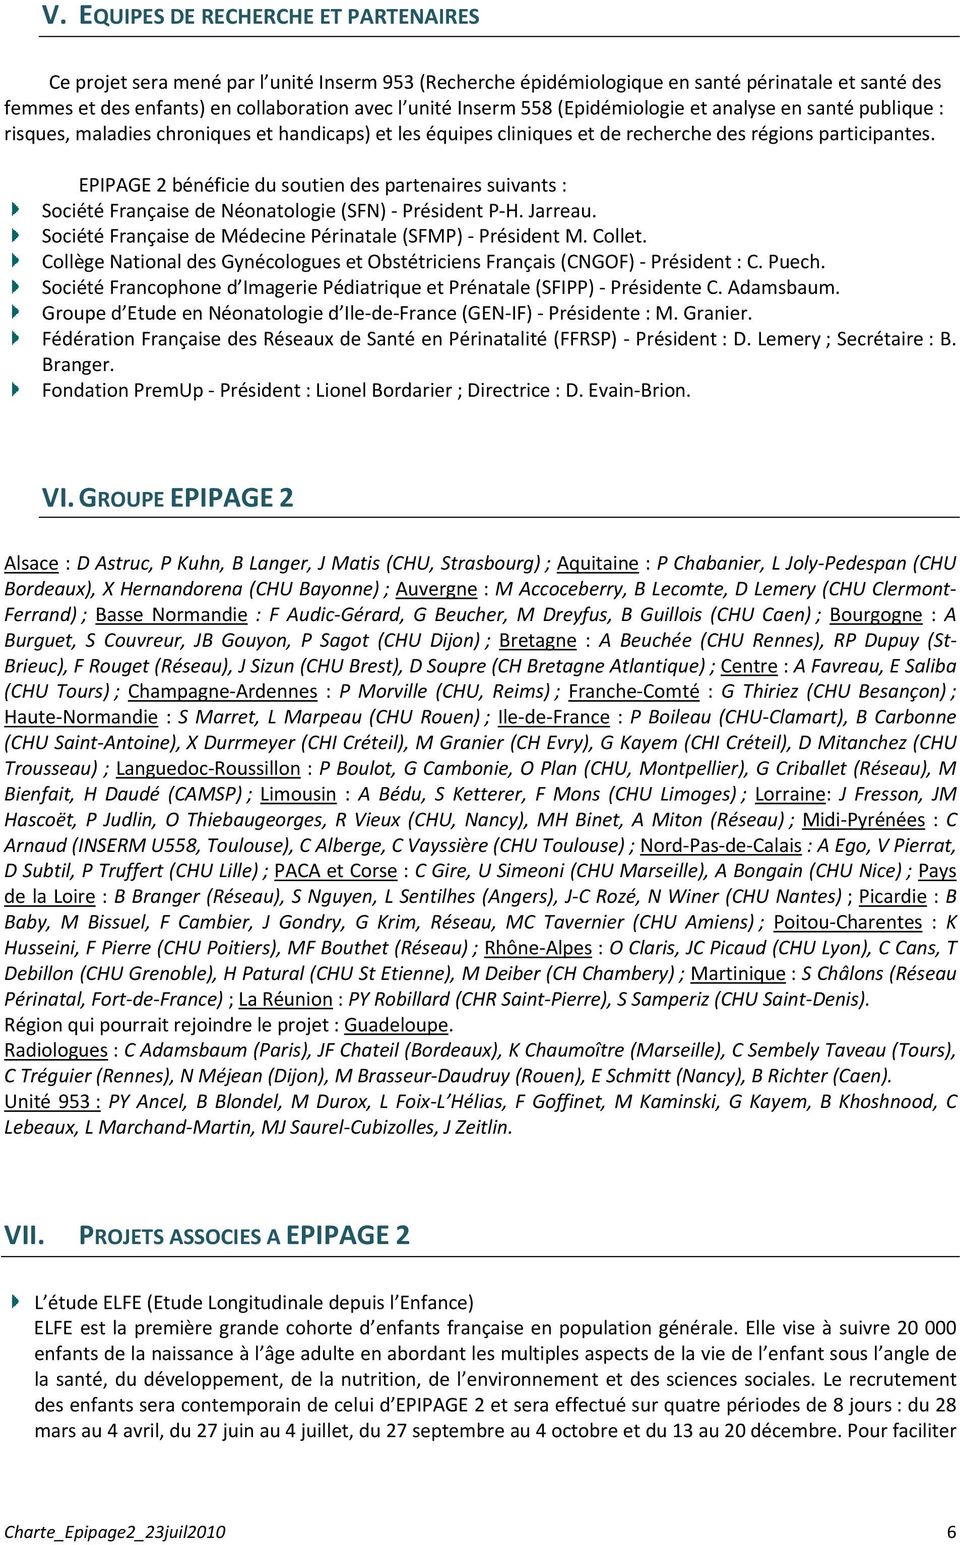 EPIPAGE 2 bénéficie du soutien des partenaires suivants : Société Française de Néonatologie (SFN) Président P H. Jarreau. Société Française de Médecine Périnatale (SFMP) Président M. Collet.